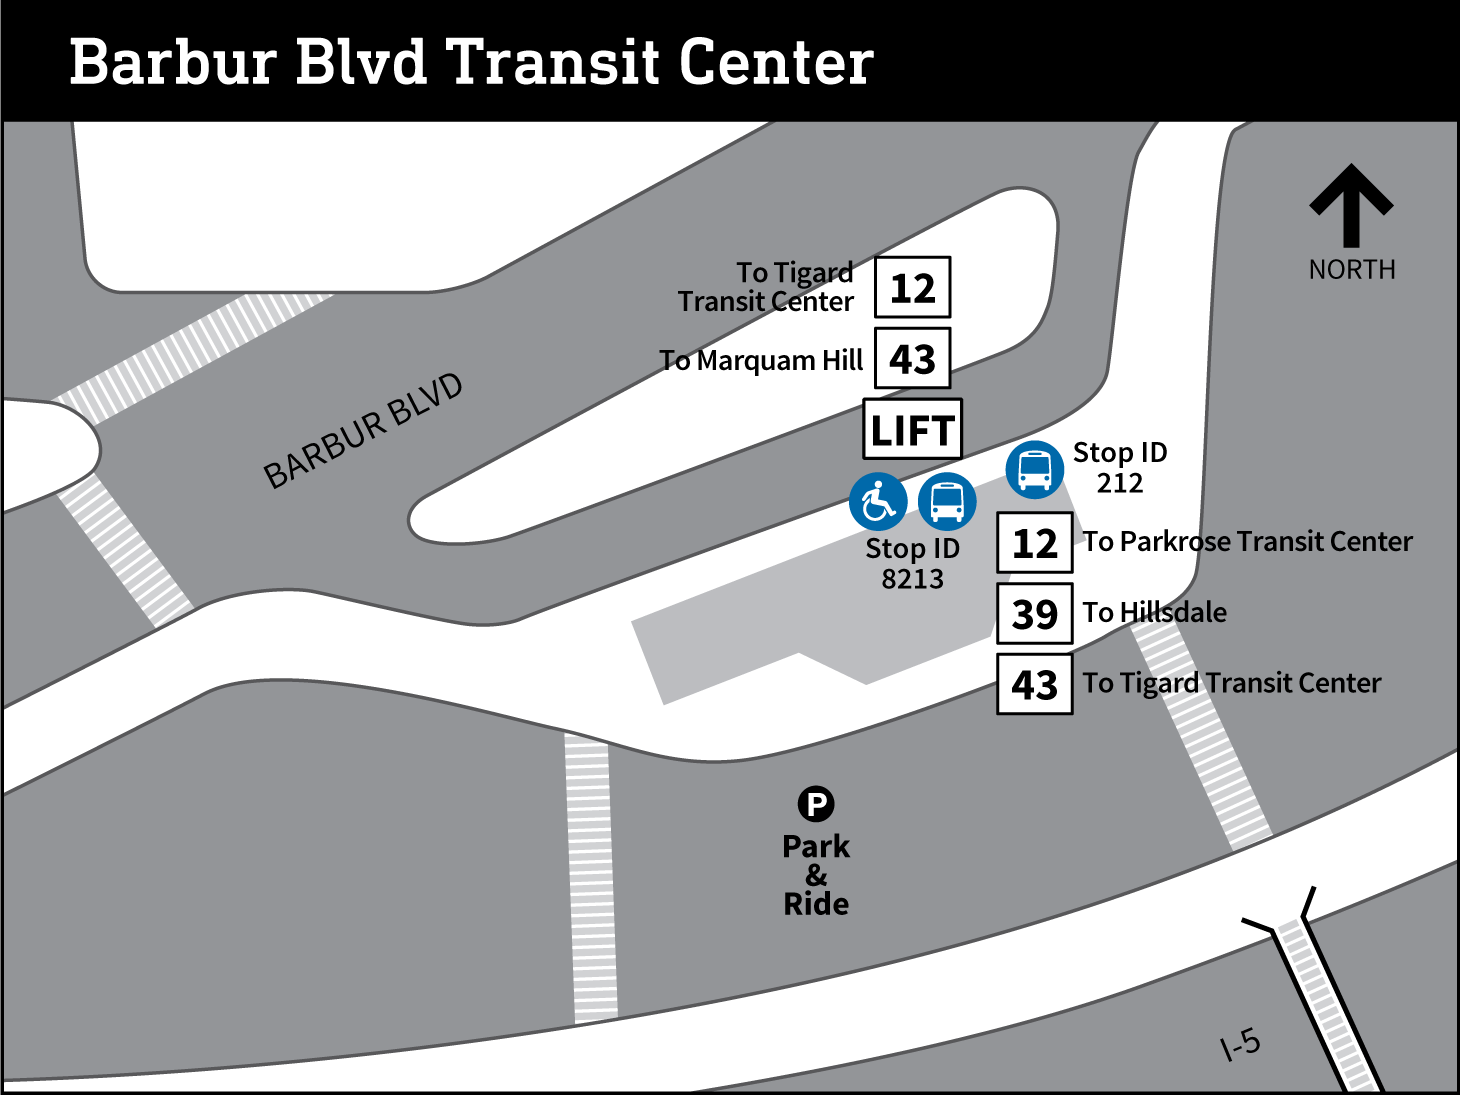 Barbur Blvd Transit Center